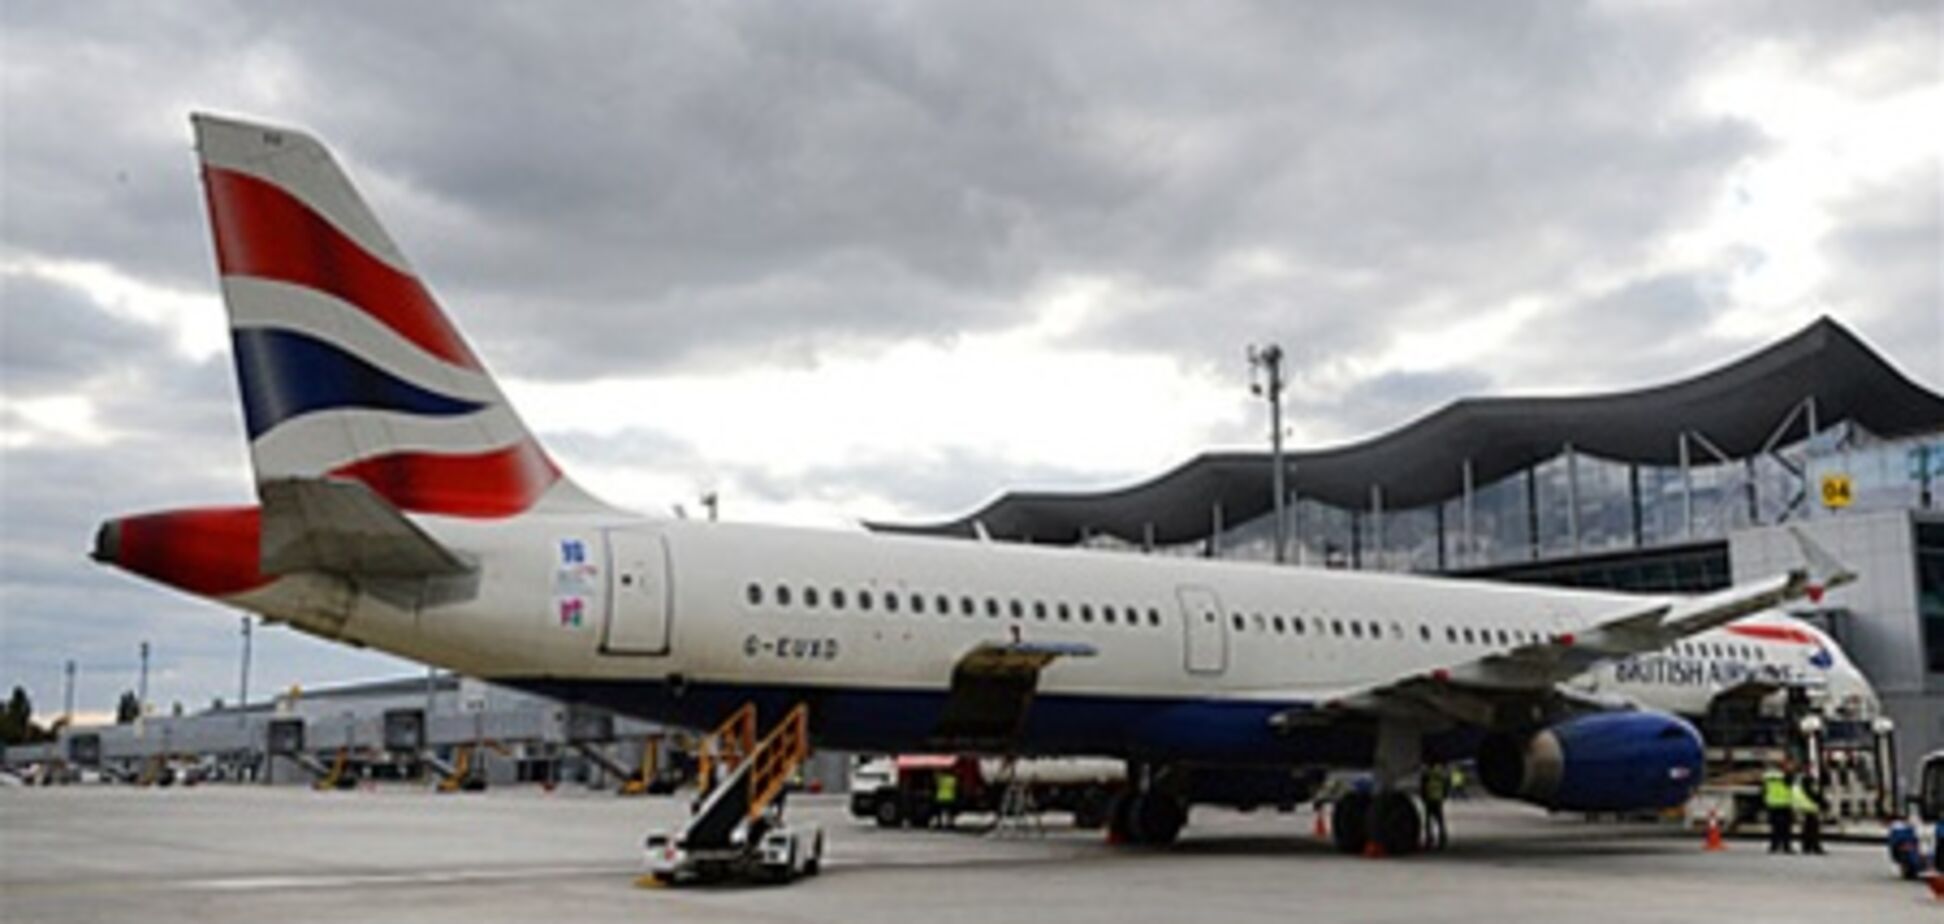 Авиакомпании 'British Airways' и 'Россия' перевели рейсы в 'Борисполь' в терминал 'D'